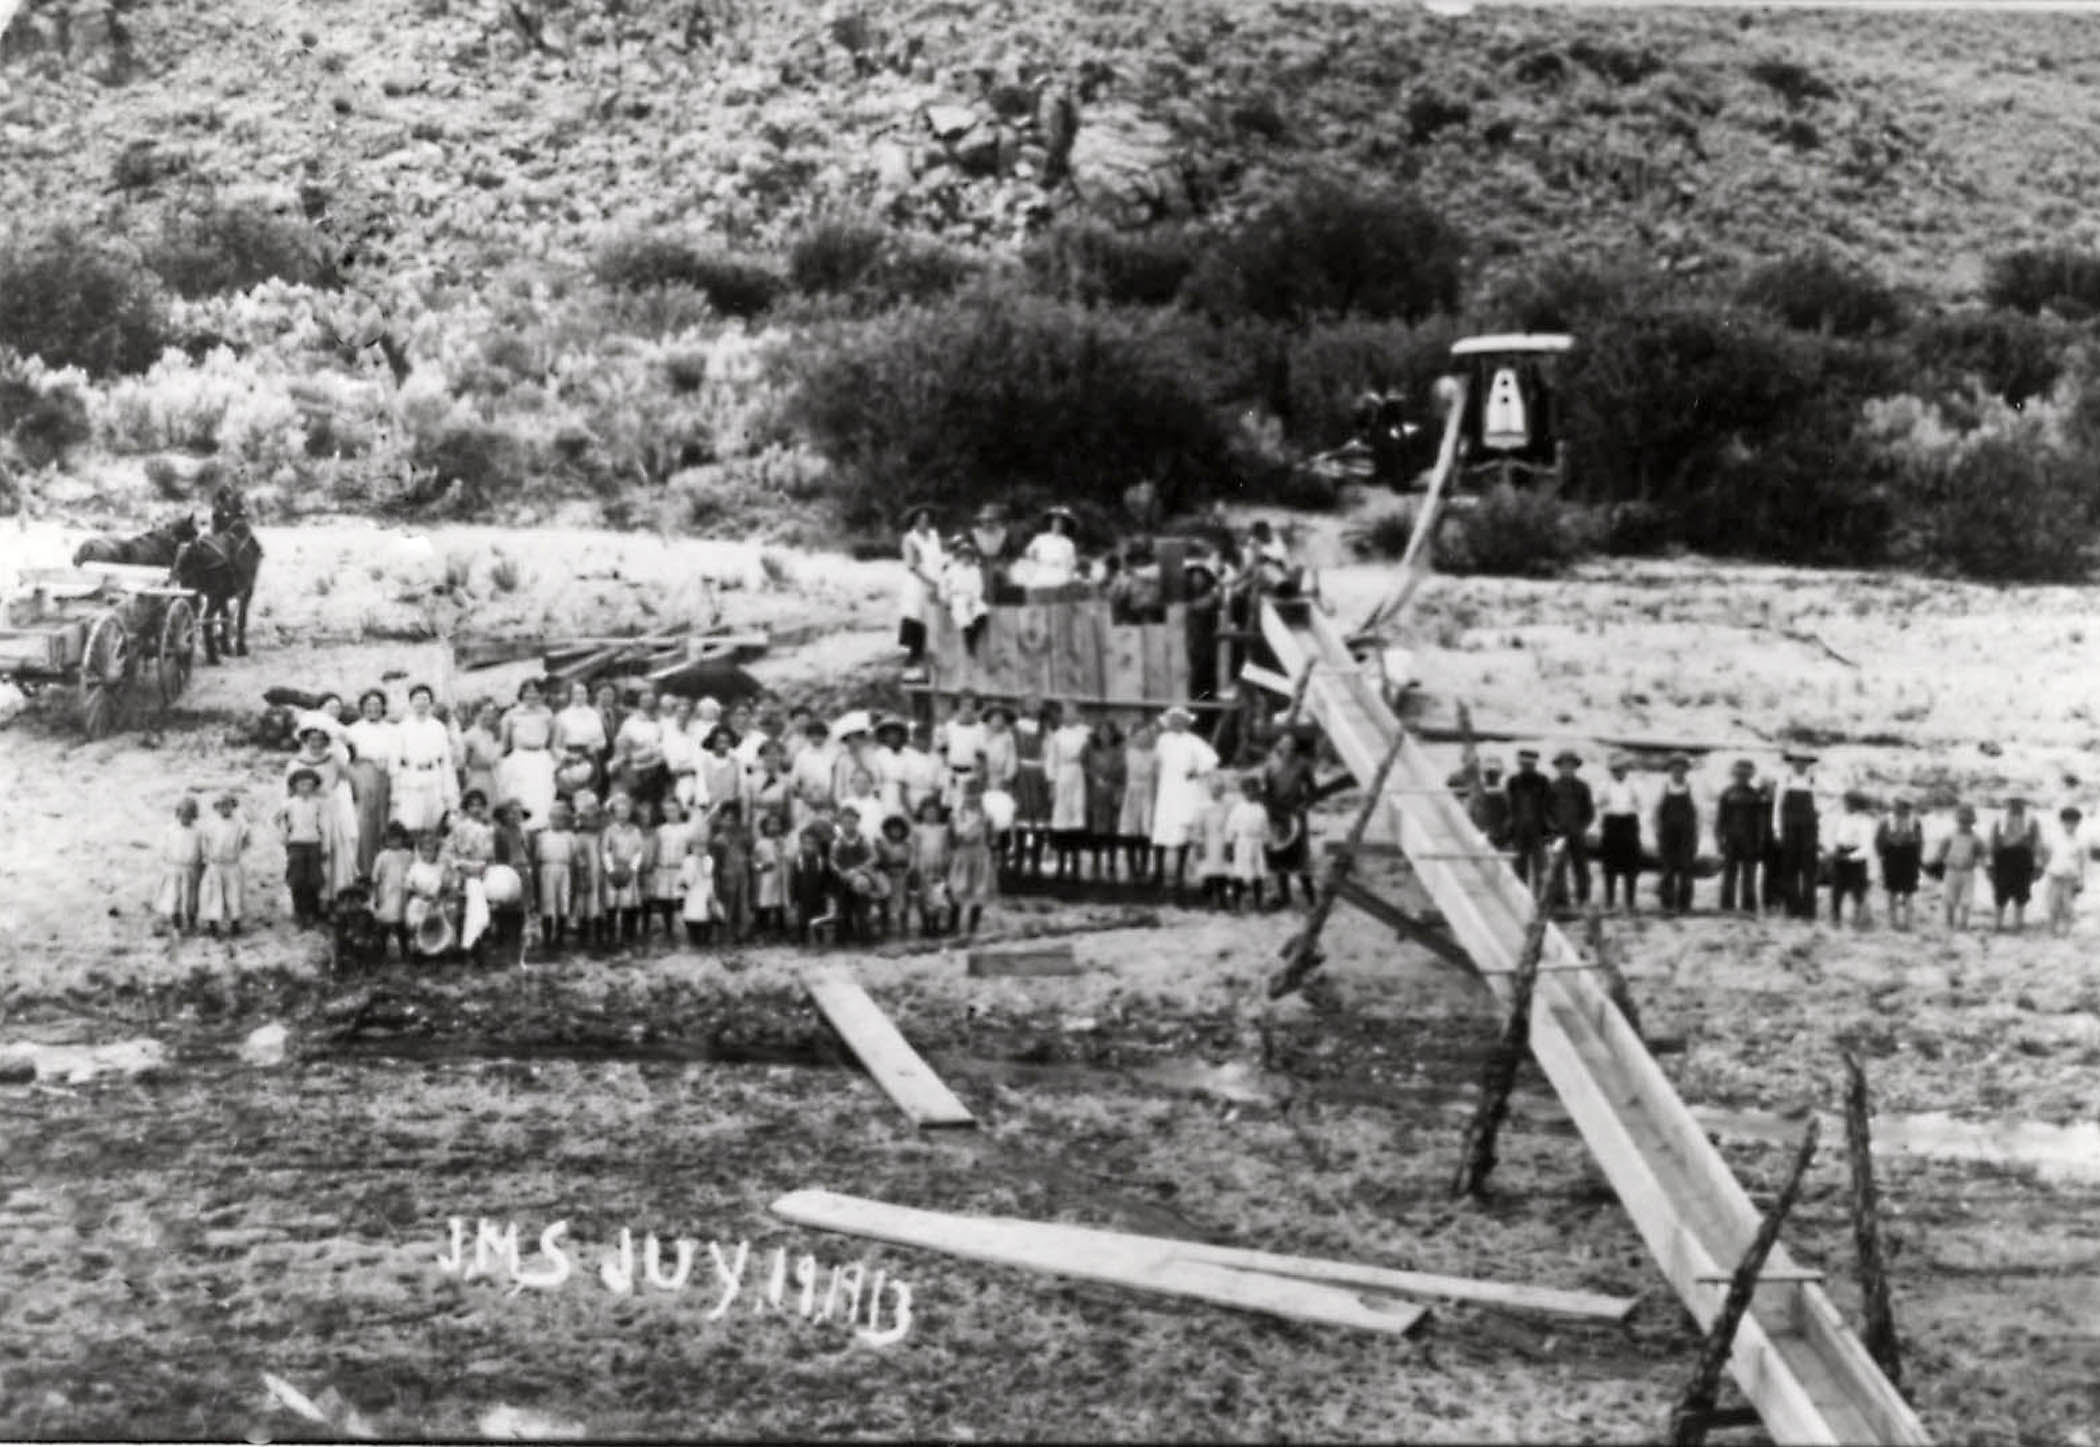 People near the Enterprise Dam on July 19, 1913